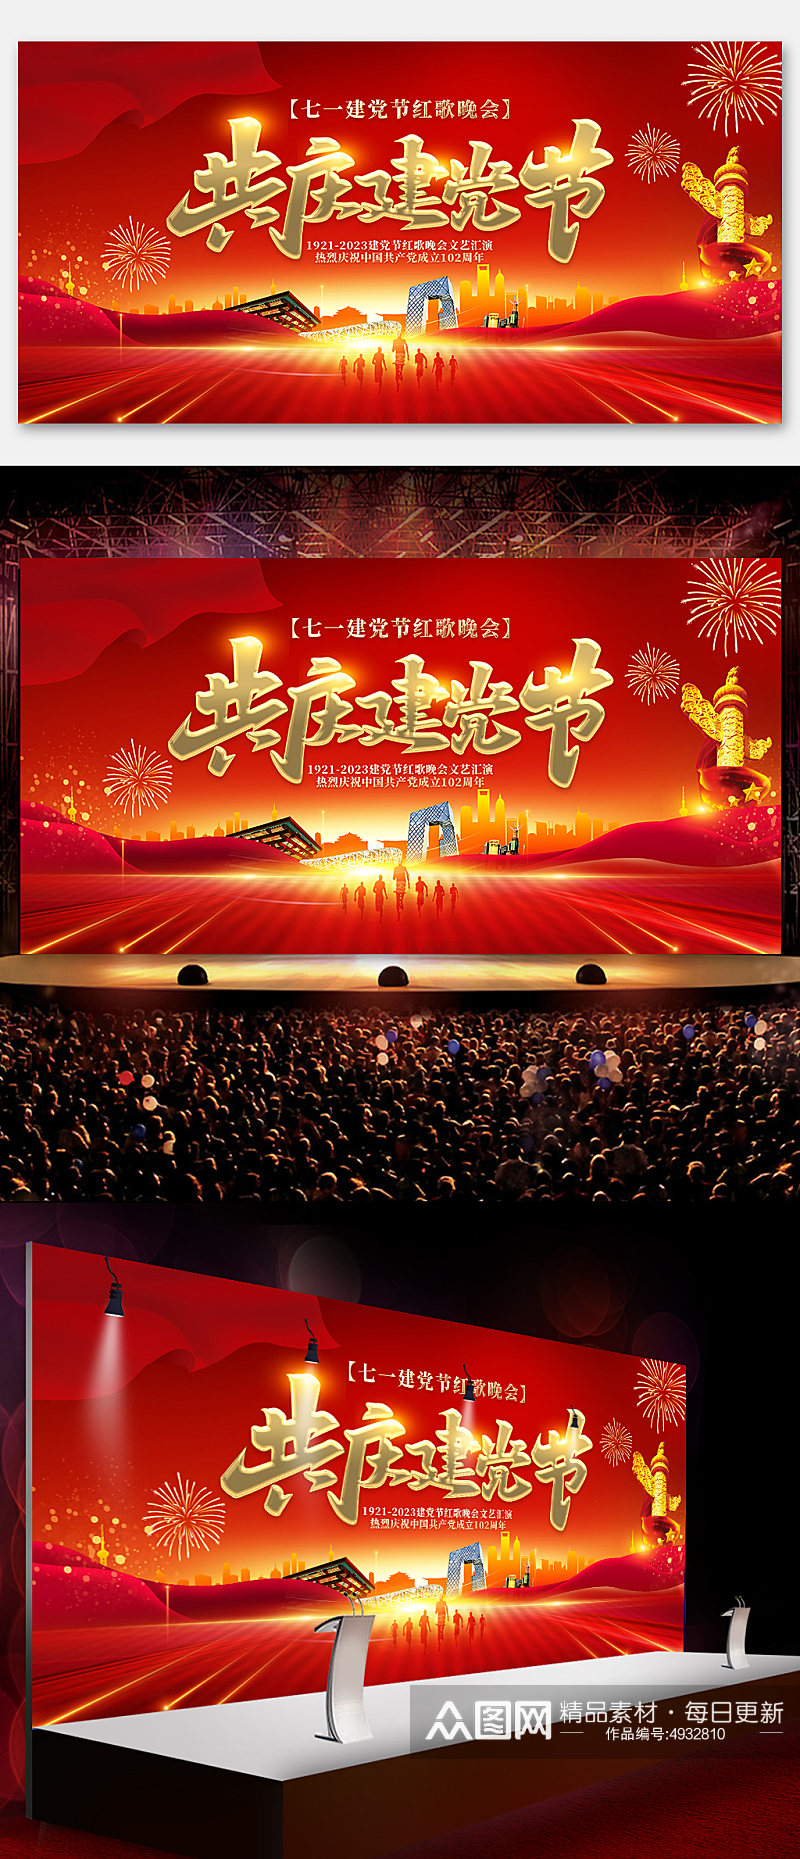 七一建党节102周年晚会红歌会展板海报素材